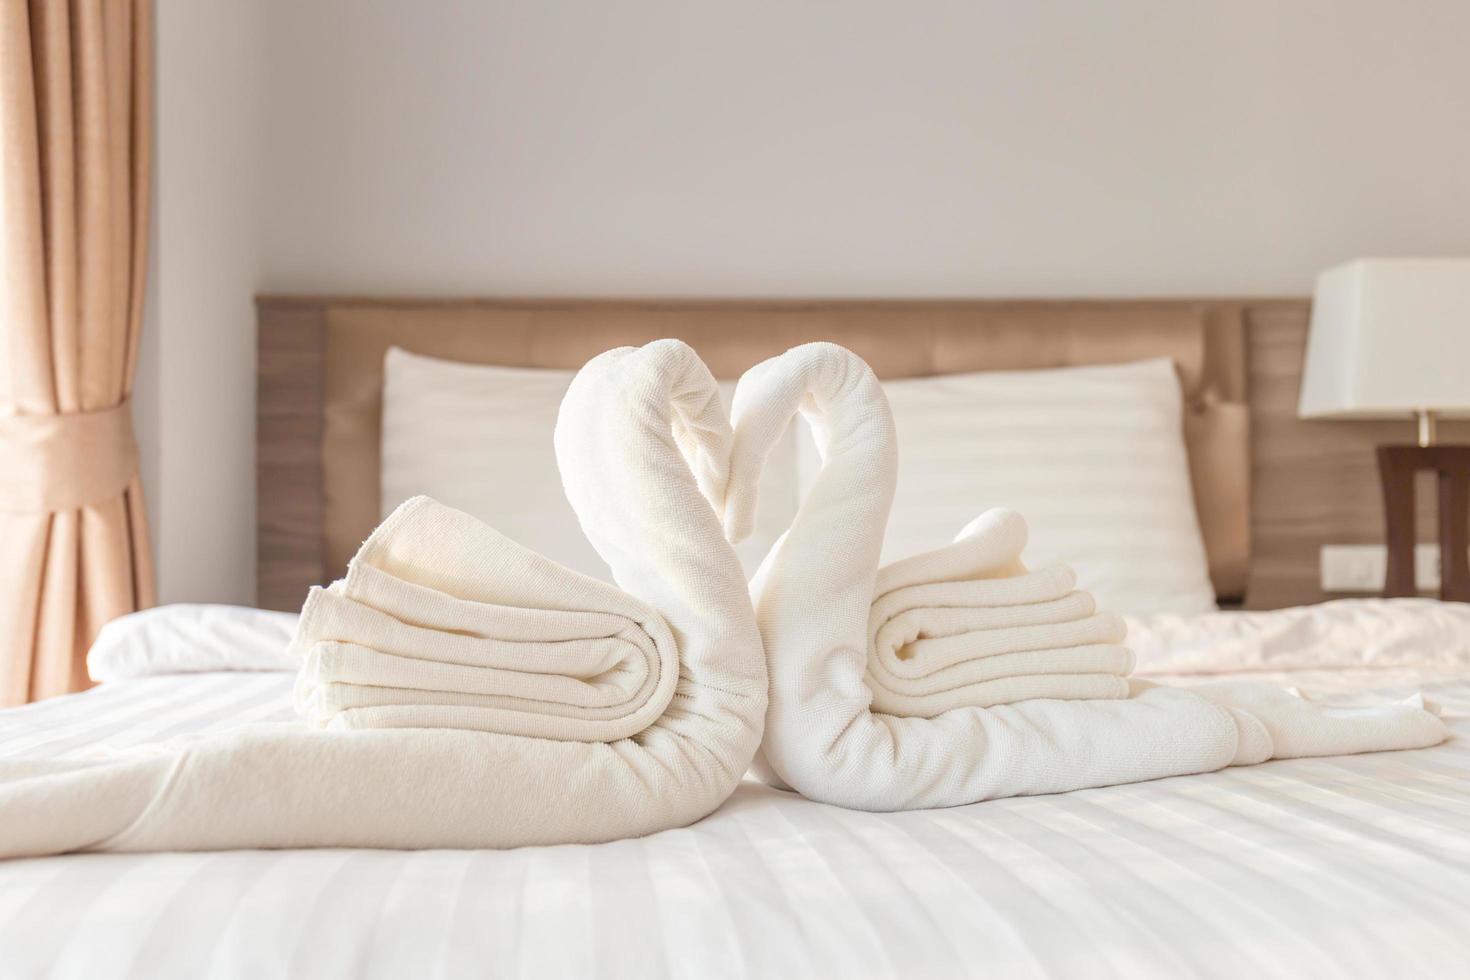 handdoek gevouwen in zwaanvorm op laken in slaapkamer foto